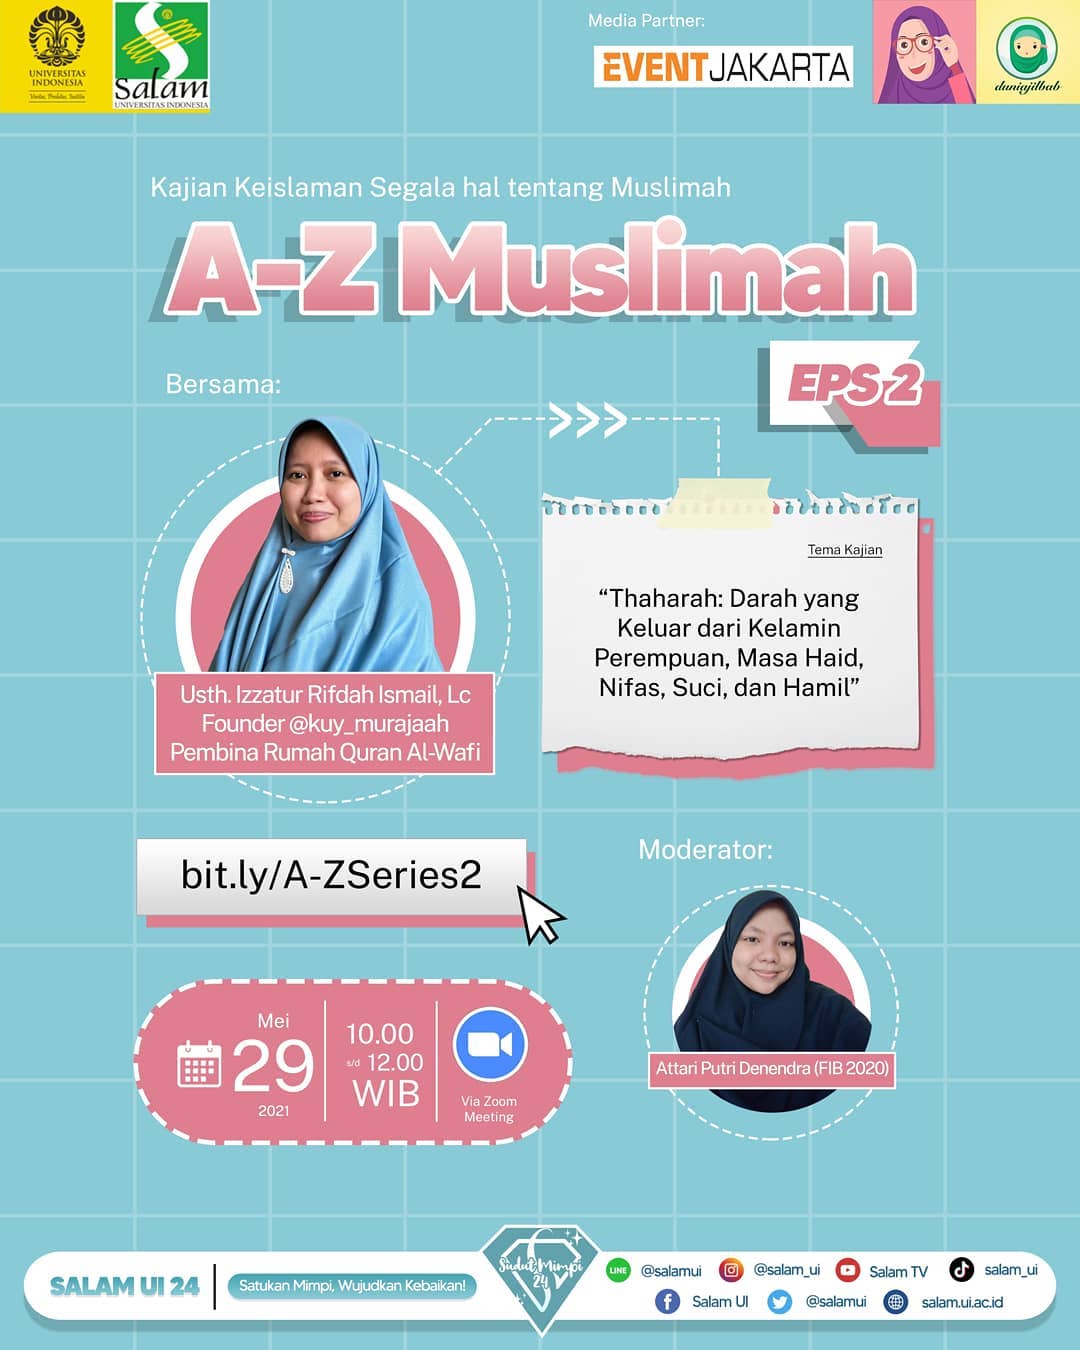 Kajian A-Z Muslimah - Darah yang Keluar dari Kelamin Perempuan, Masa Haid, Nifas, Suci, dan Hamil